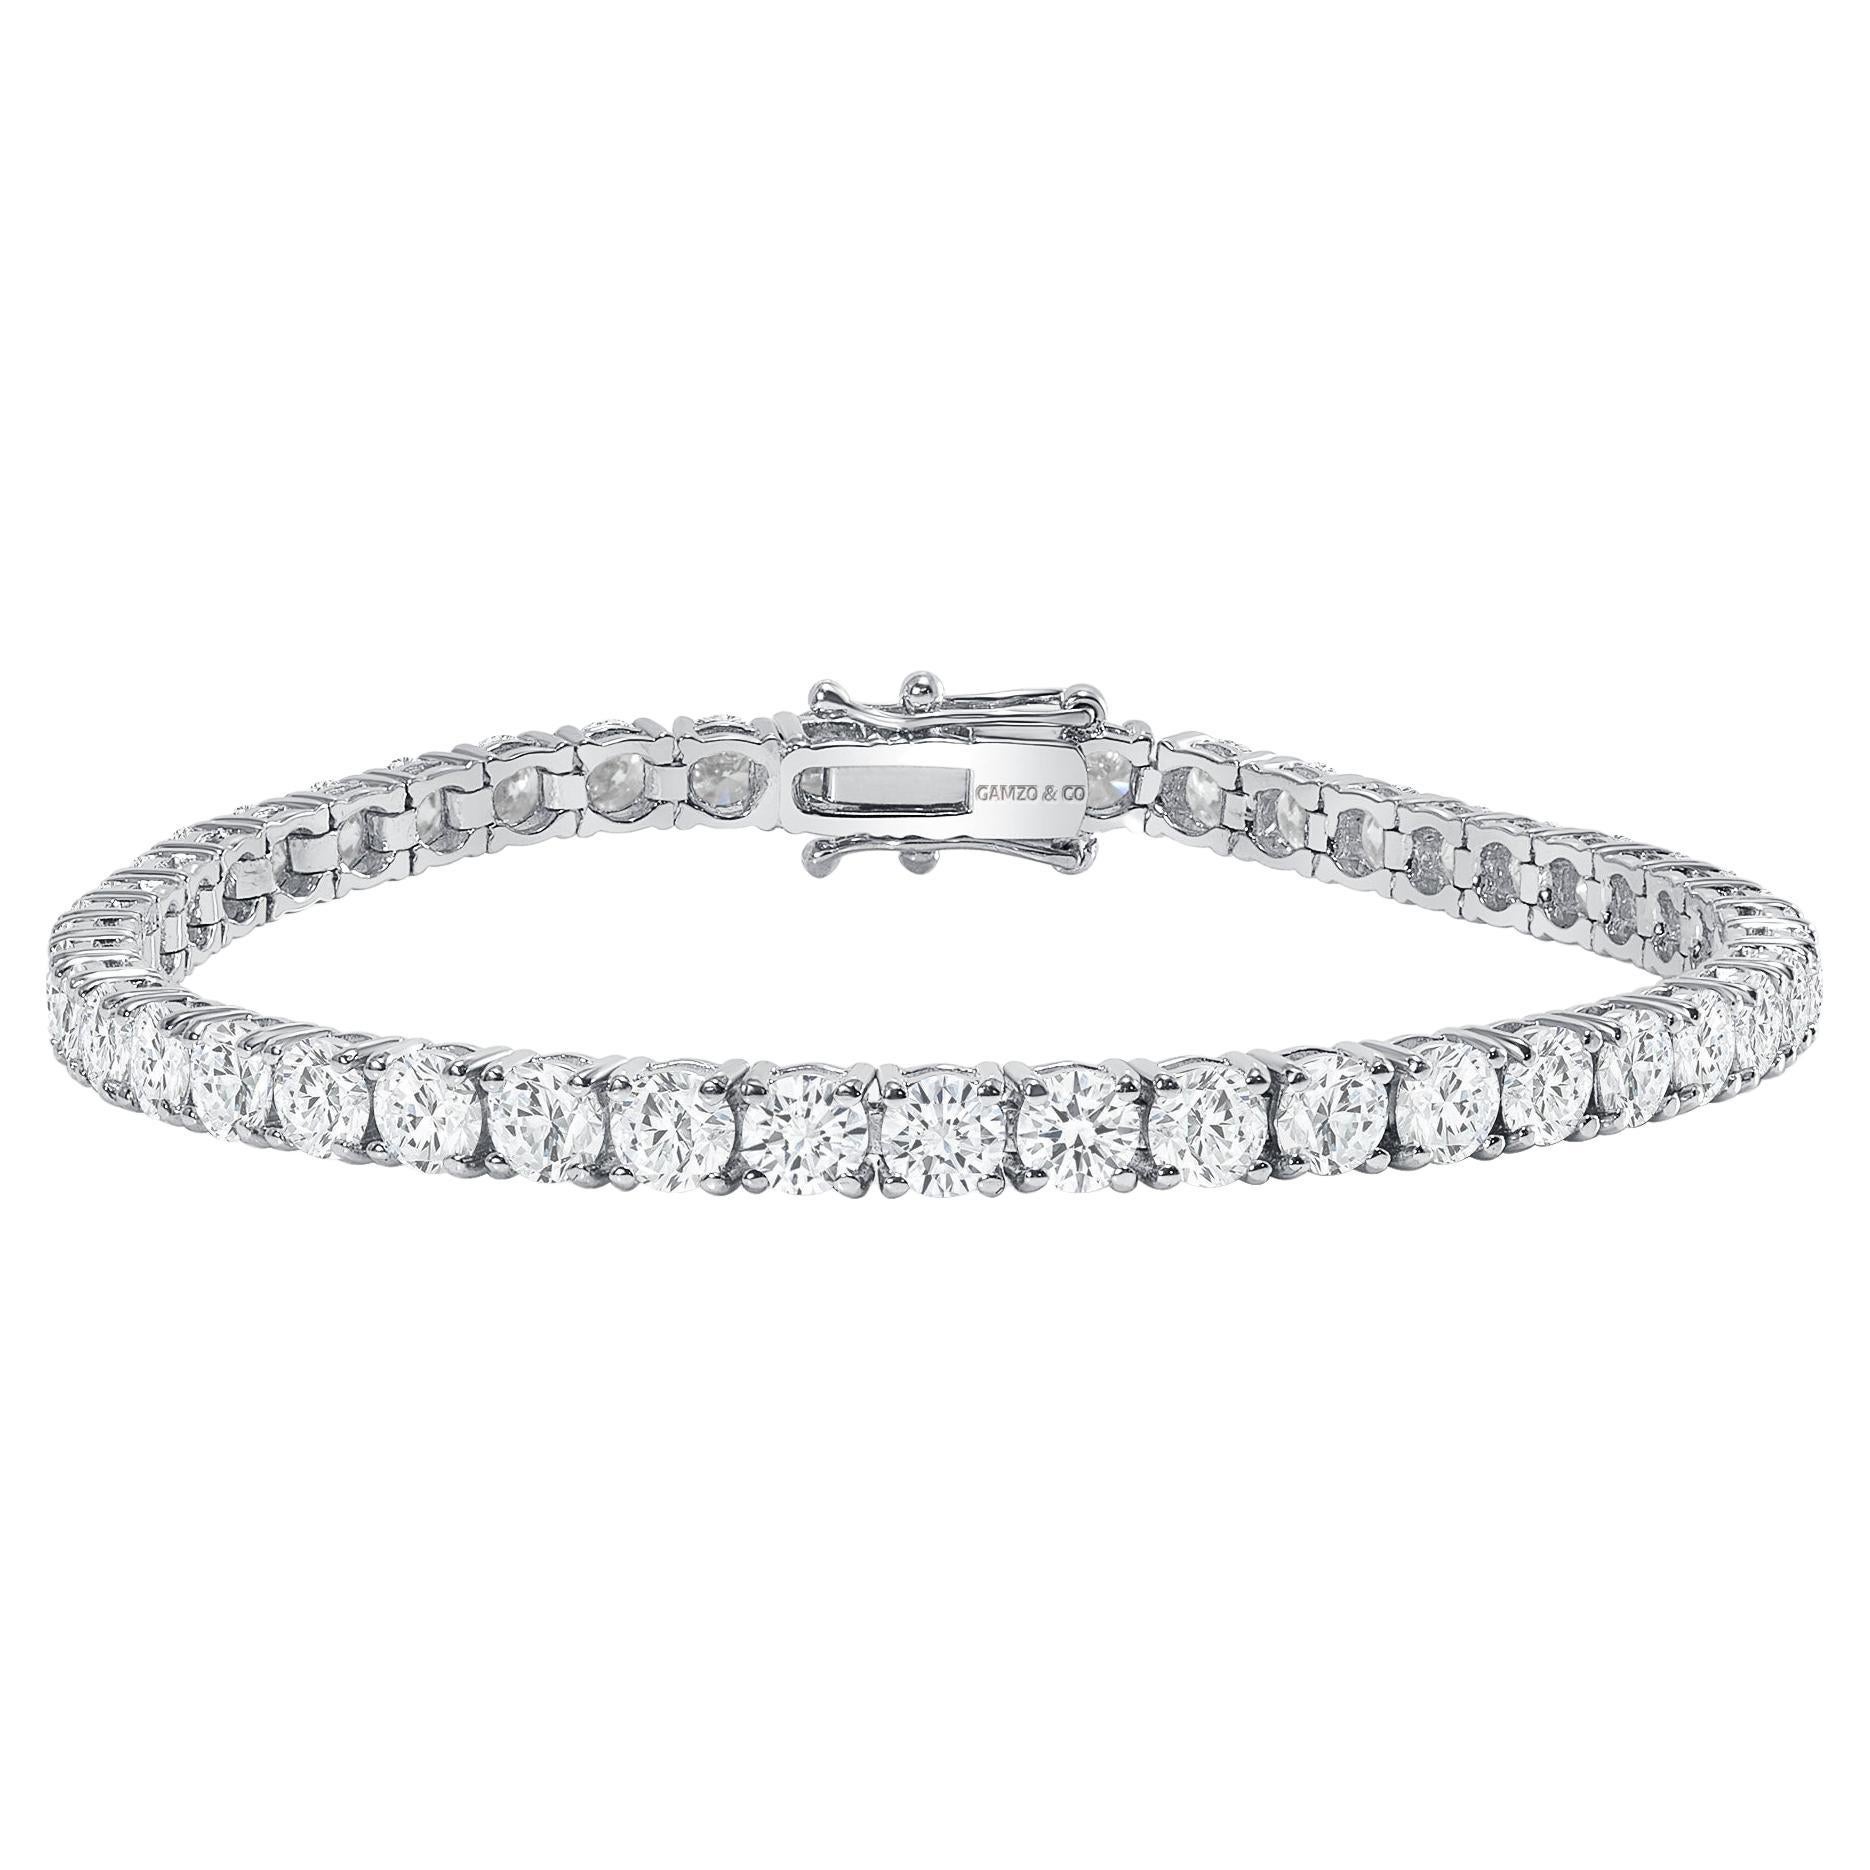 Bracelet tennis en or blanc 14 carats avec diamants ronds de 7 carats